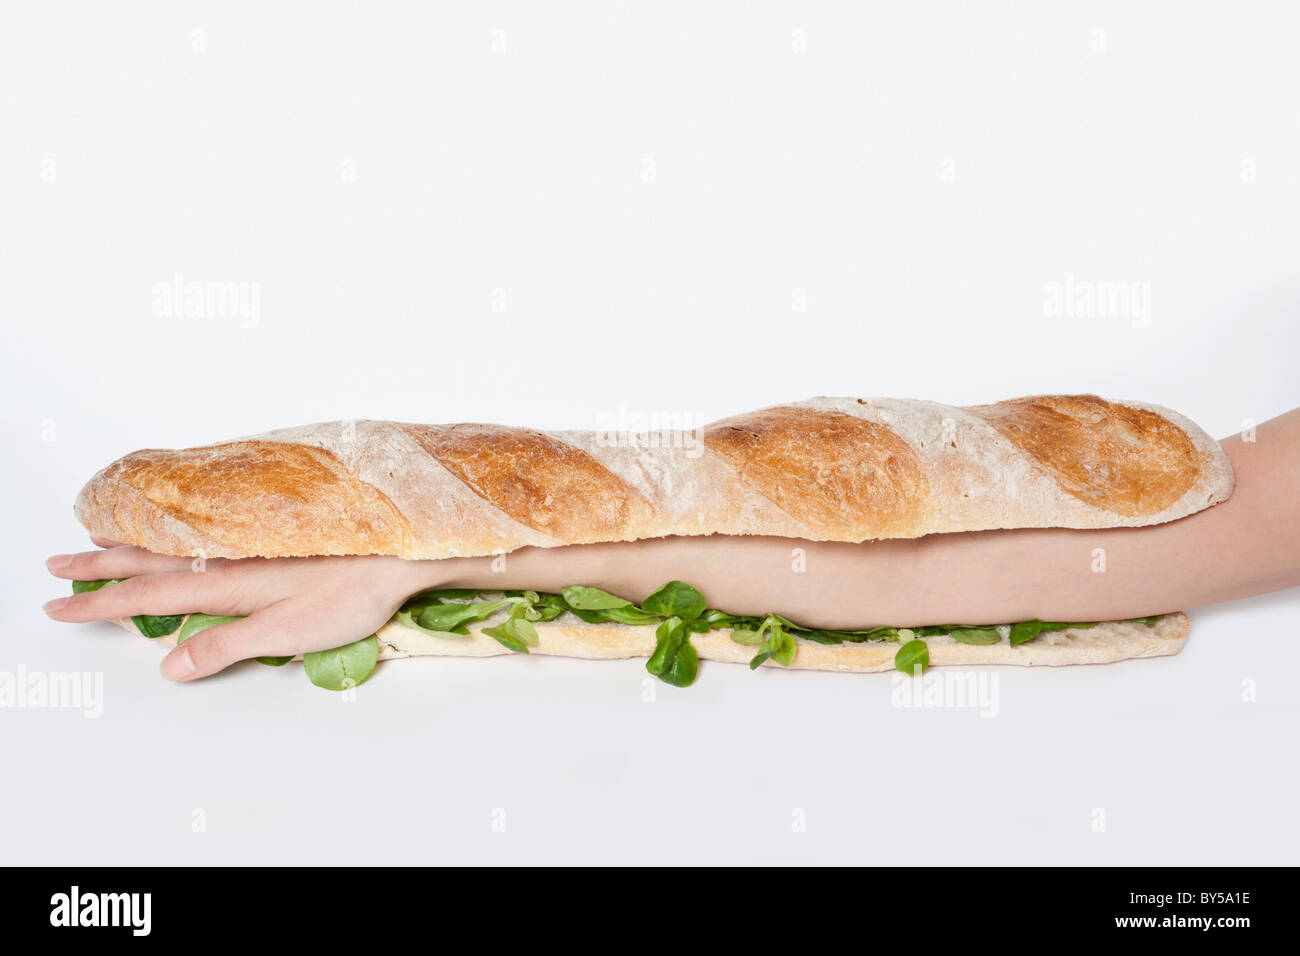 Ein u-Boot-Sandwich mit einem menschlichen Arm drin Stockfoto